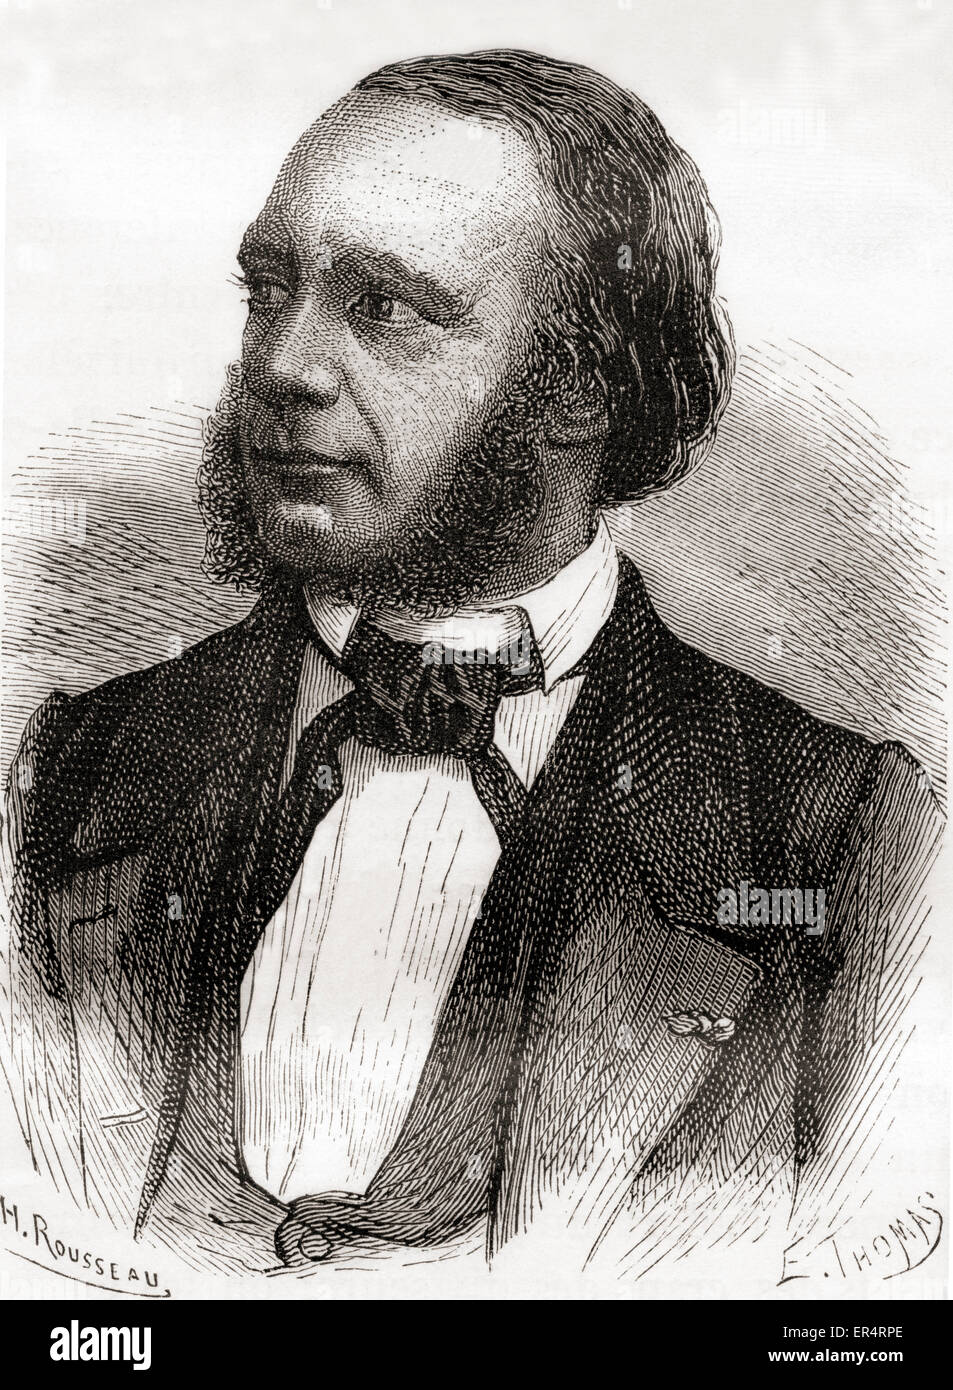 Louis François Clément Breguet, 1804 – 1883.  Französischer Physiker und Uhrmacher, bekannt für seine Arbeit in den frühen Tagen der Telegraphie. Stockfoto